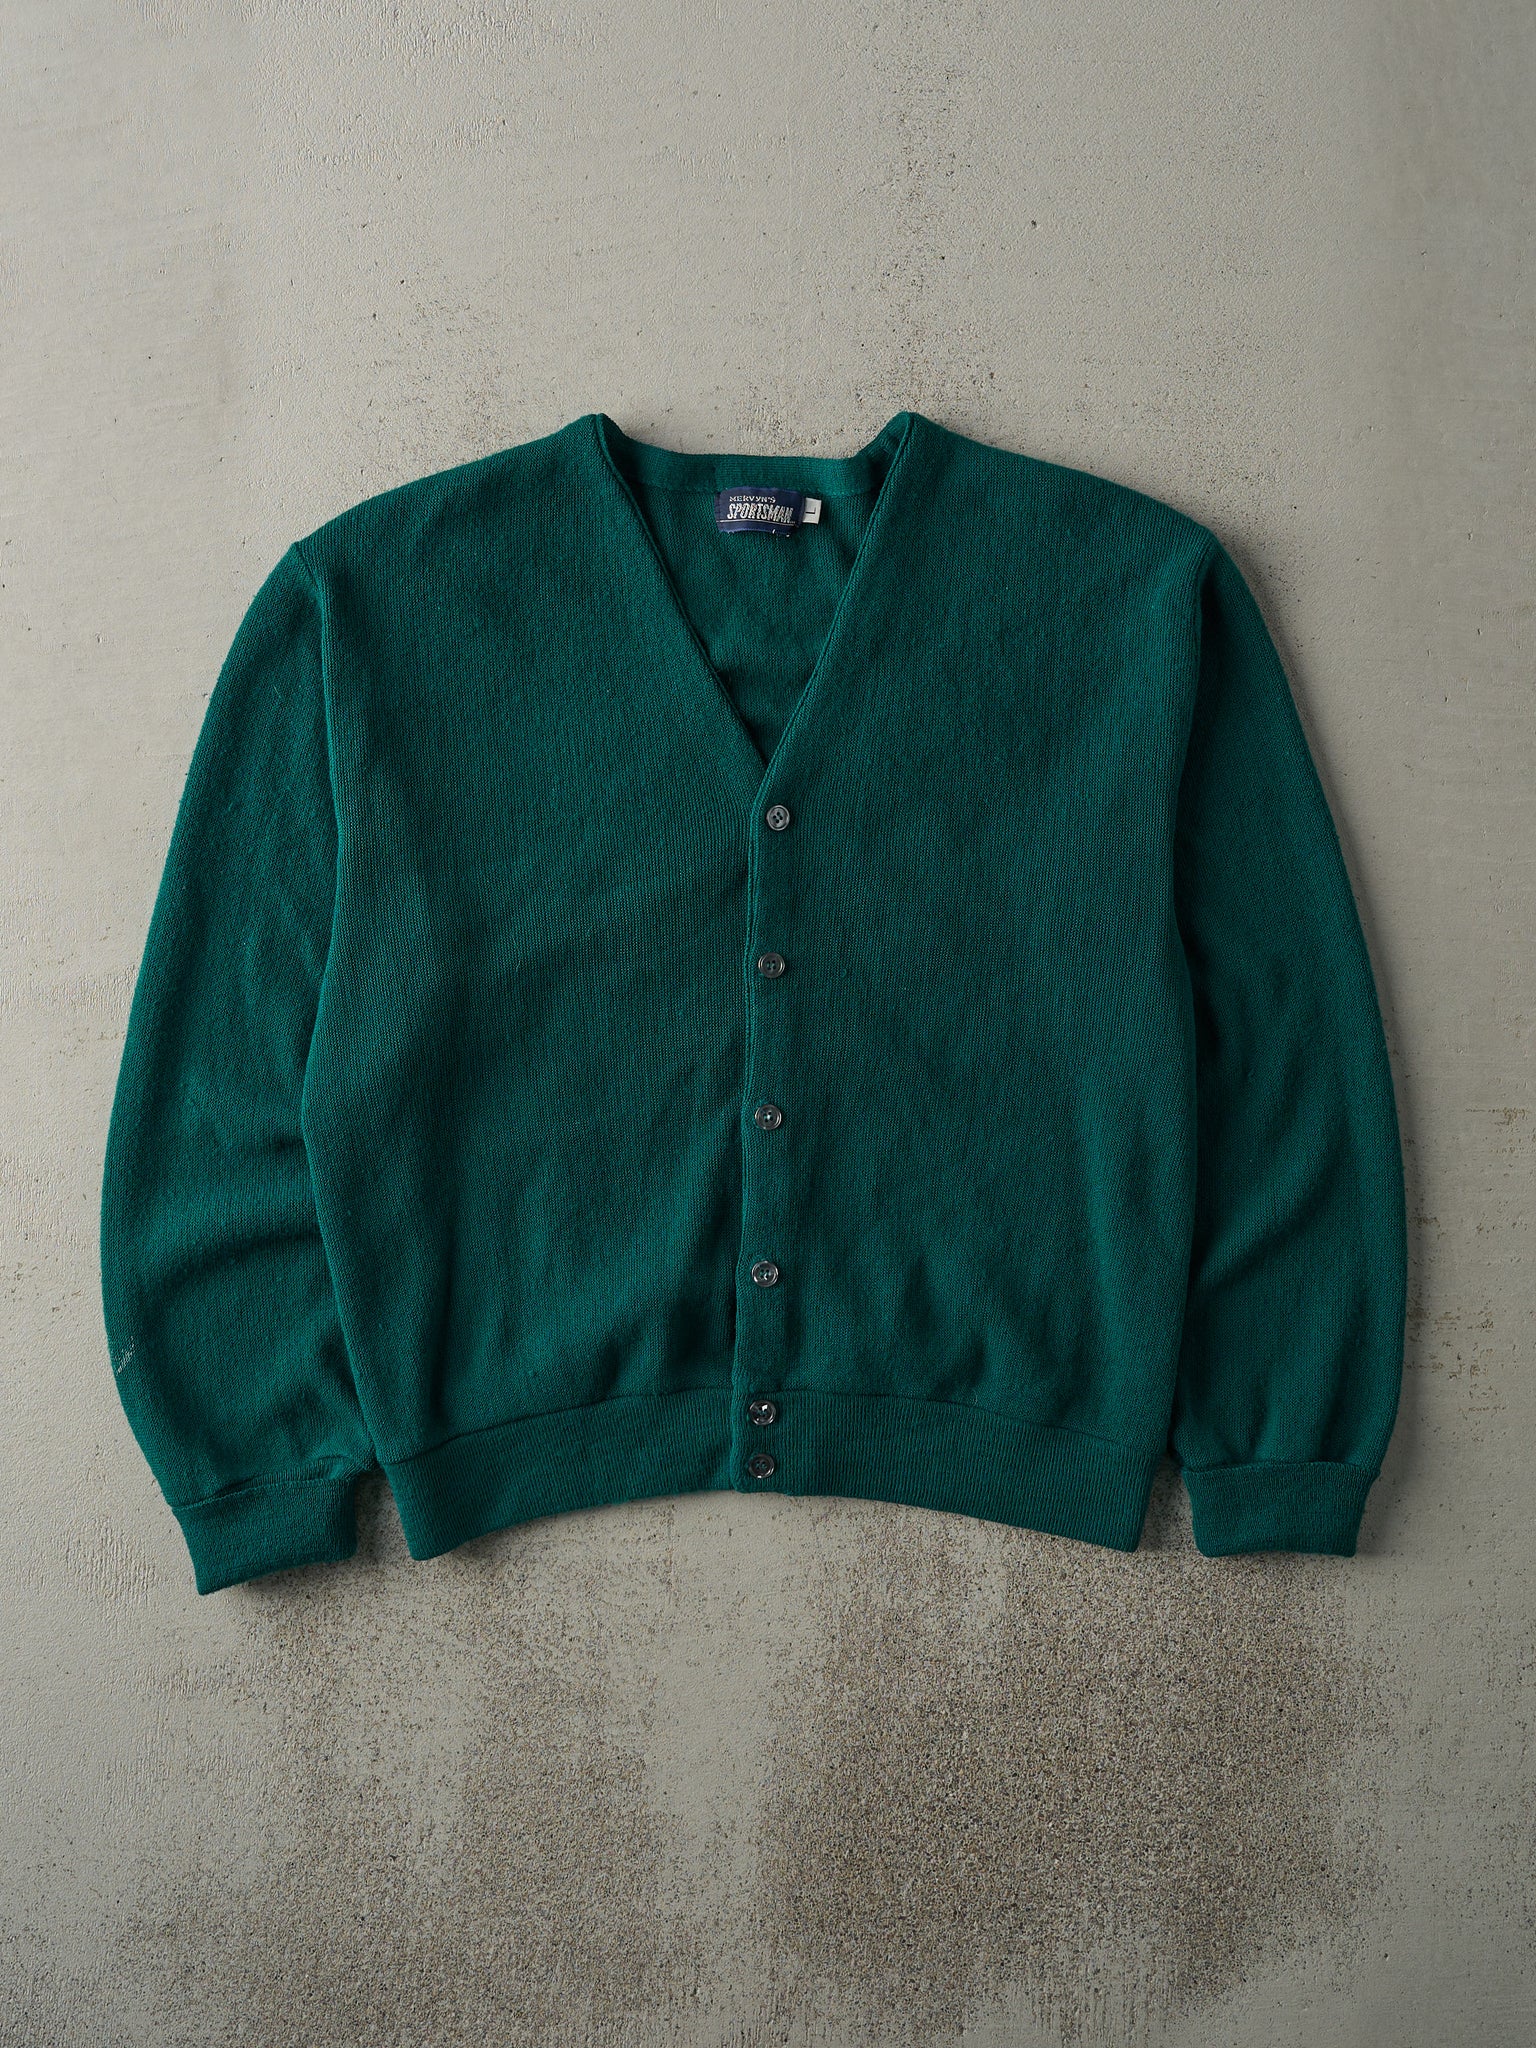 Vintage 80s Green Knit Cardigan (M/L)